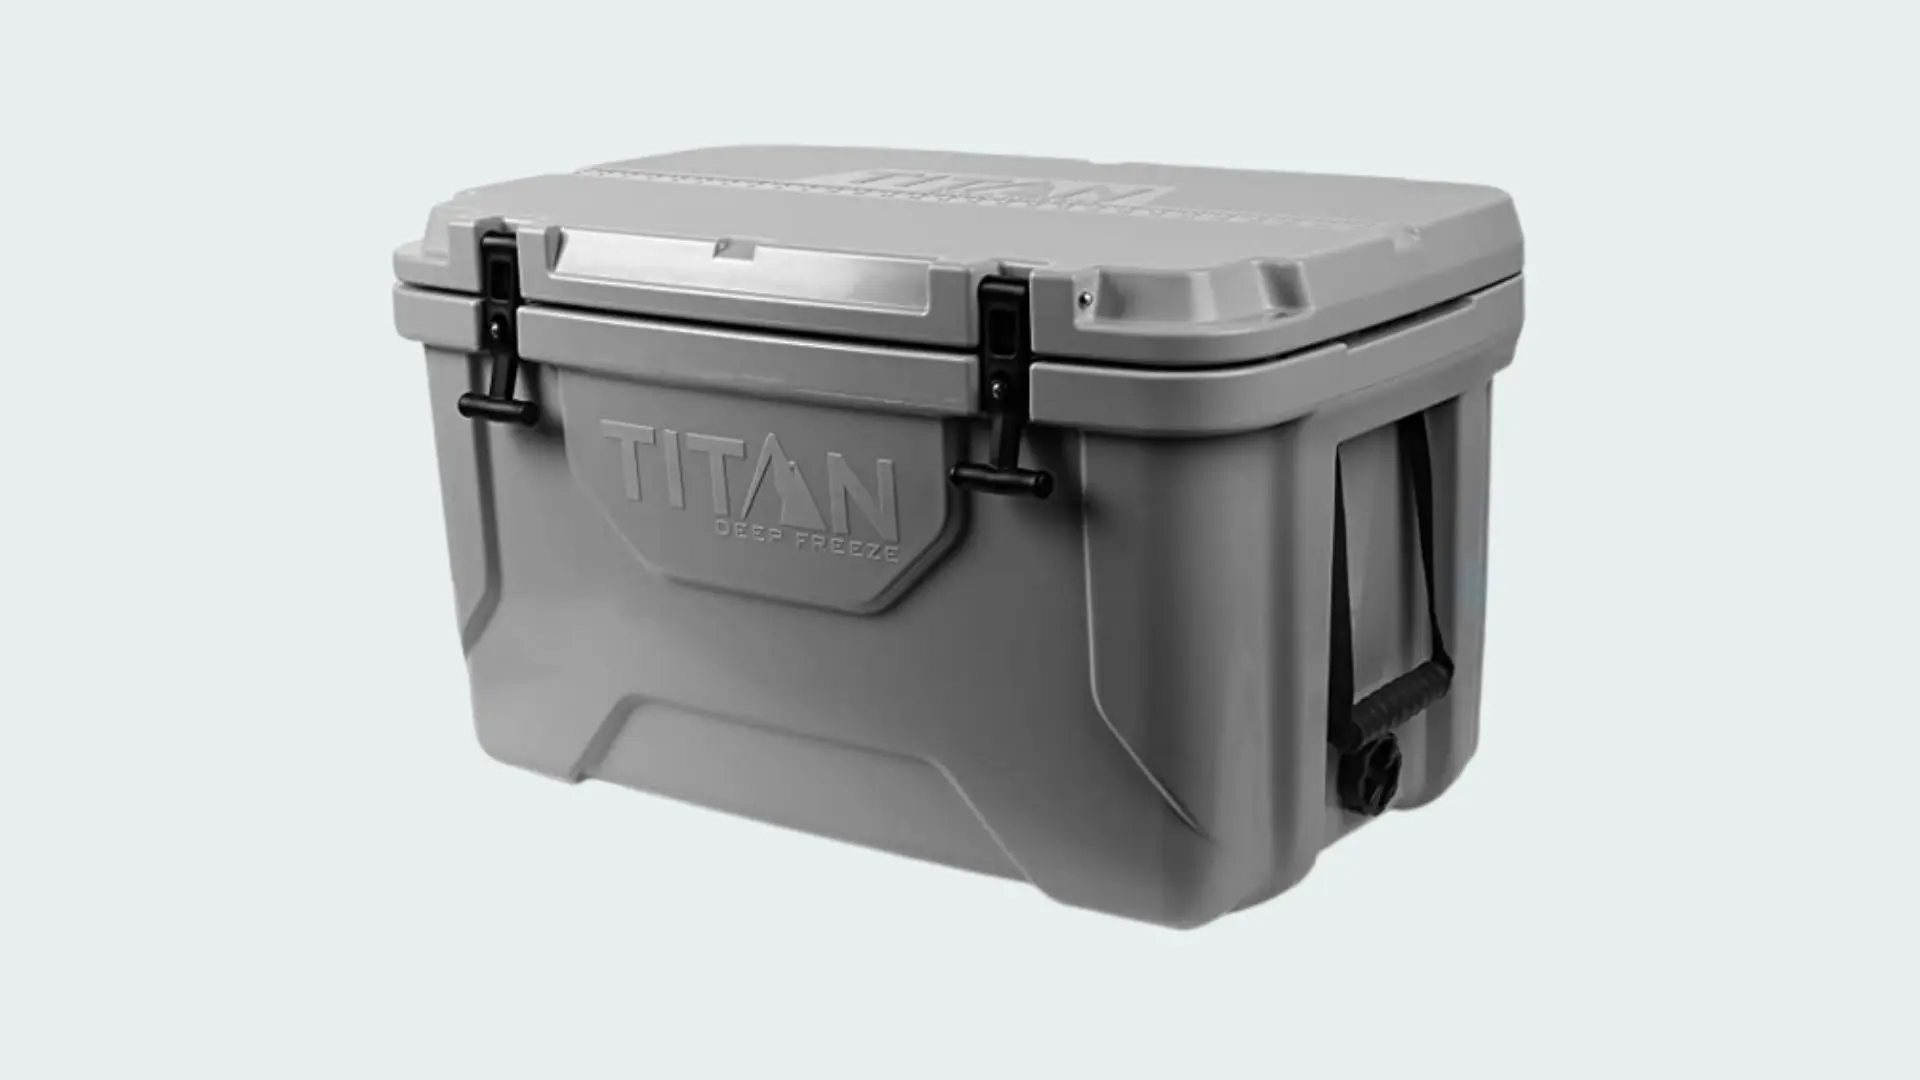 Titan Cooler